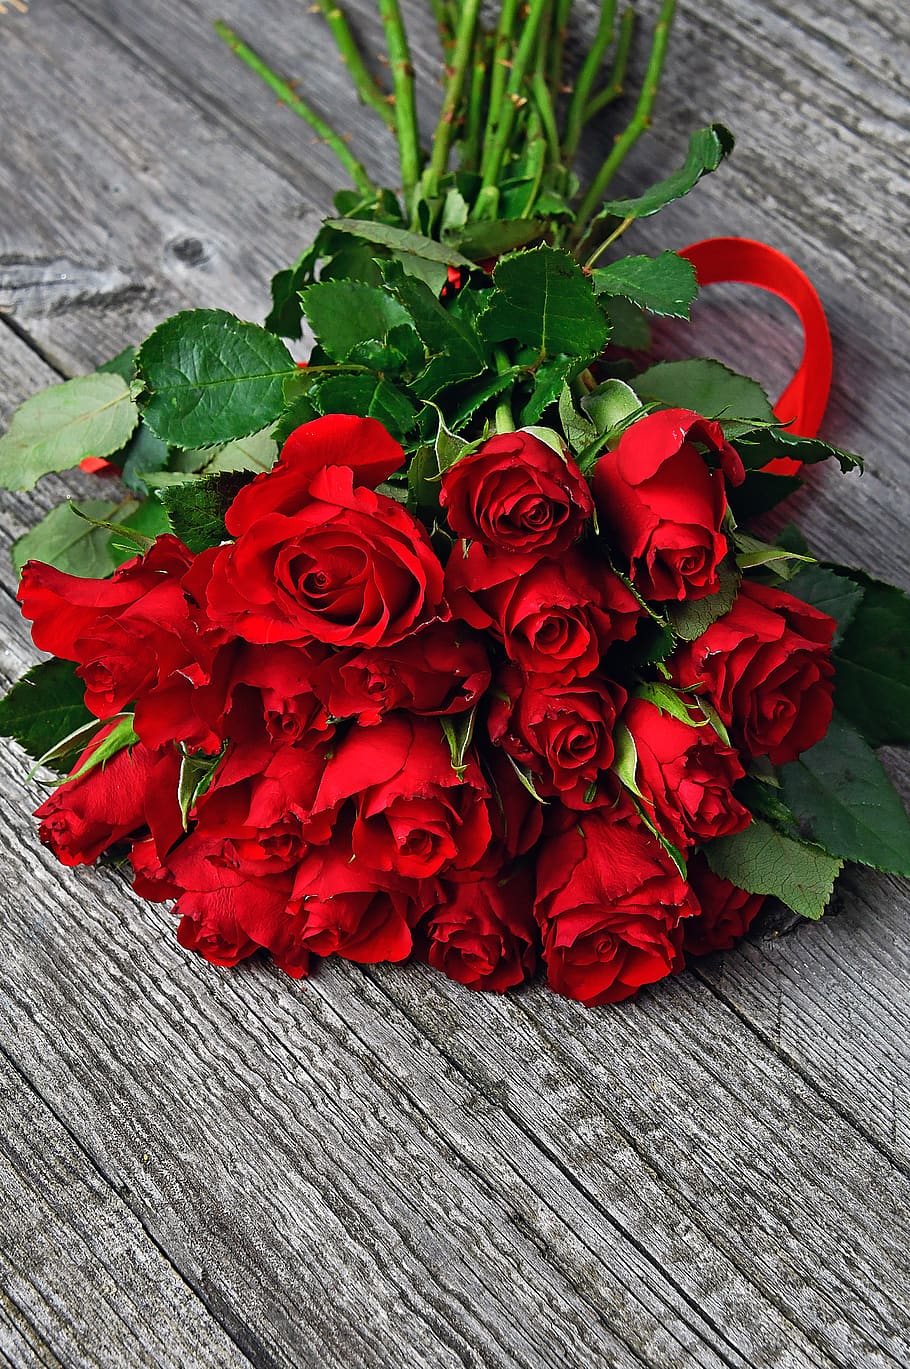 rosa, dia dos namorados, romântico, romance, amor, bom, papel de parede, flor, flores, símbolo